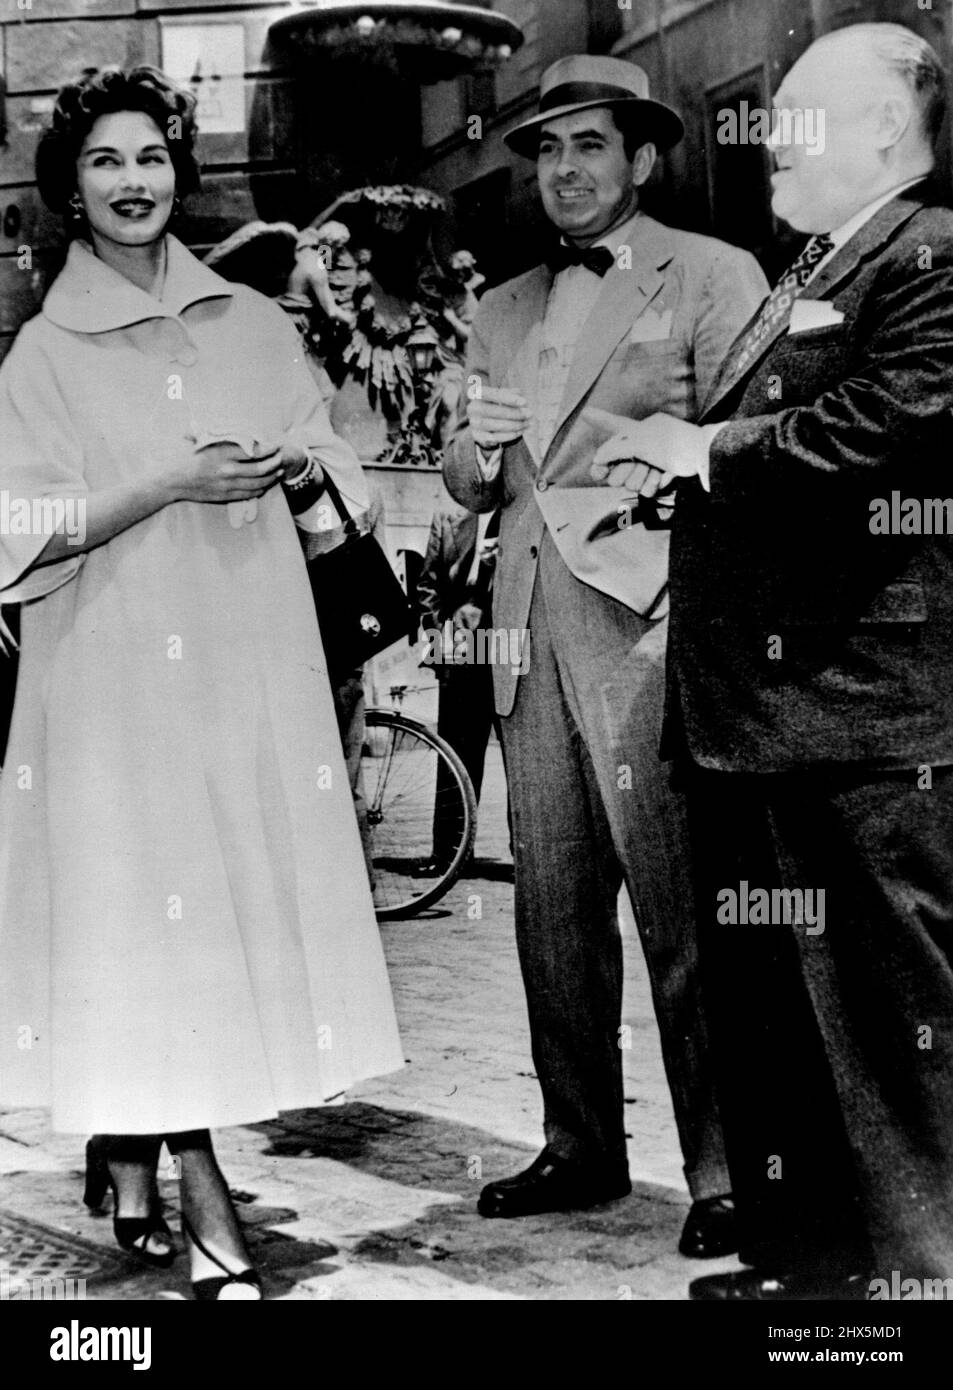 Tyrone Power e Linda Christian a Roma -- Tyrone Power e sua moglie Linda Christian hanno fatto una visita a Roma a sorpresa. Linda Christian si aspetta presto un secondo bambino. Maggio 15, 1953. (Foto di Paul Popper Ltd.). Foto Stock